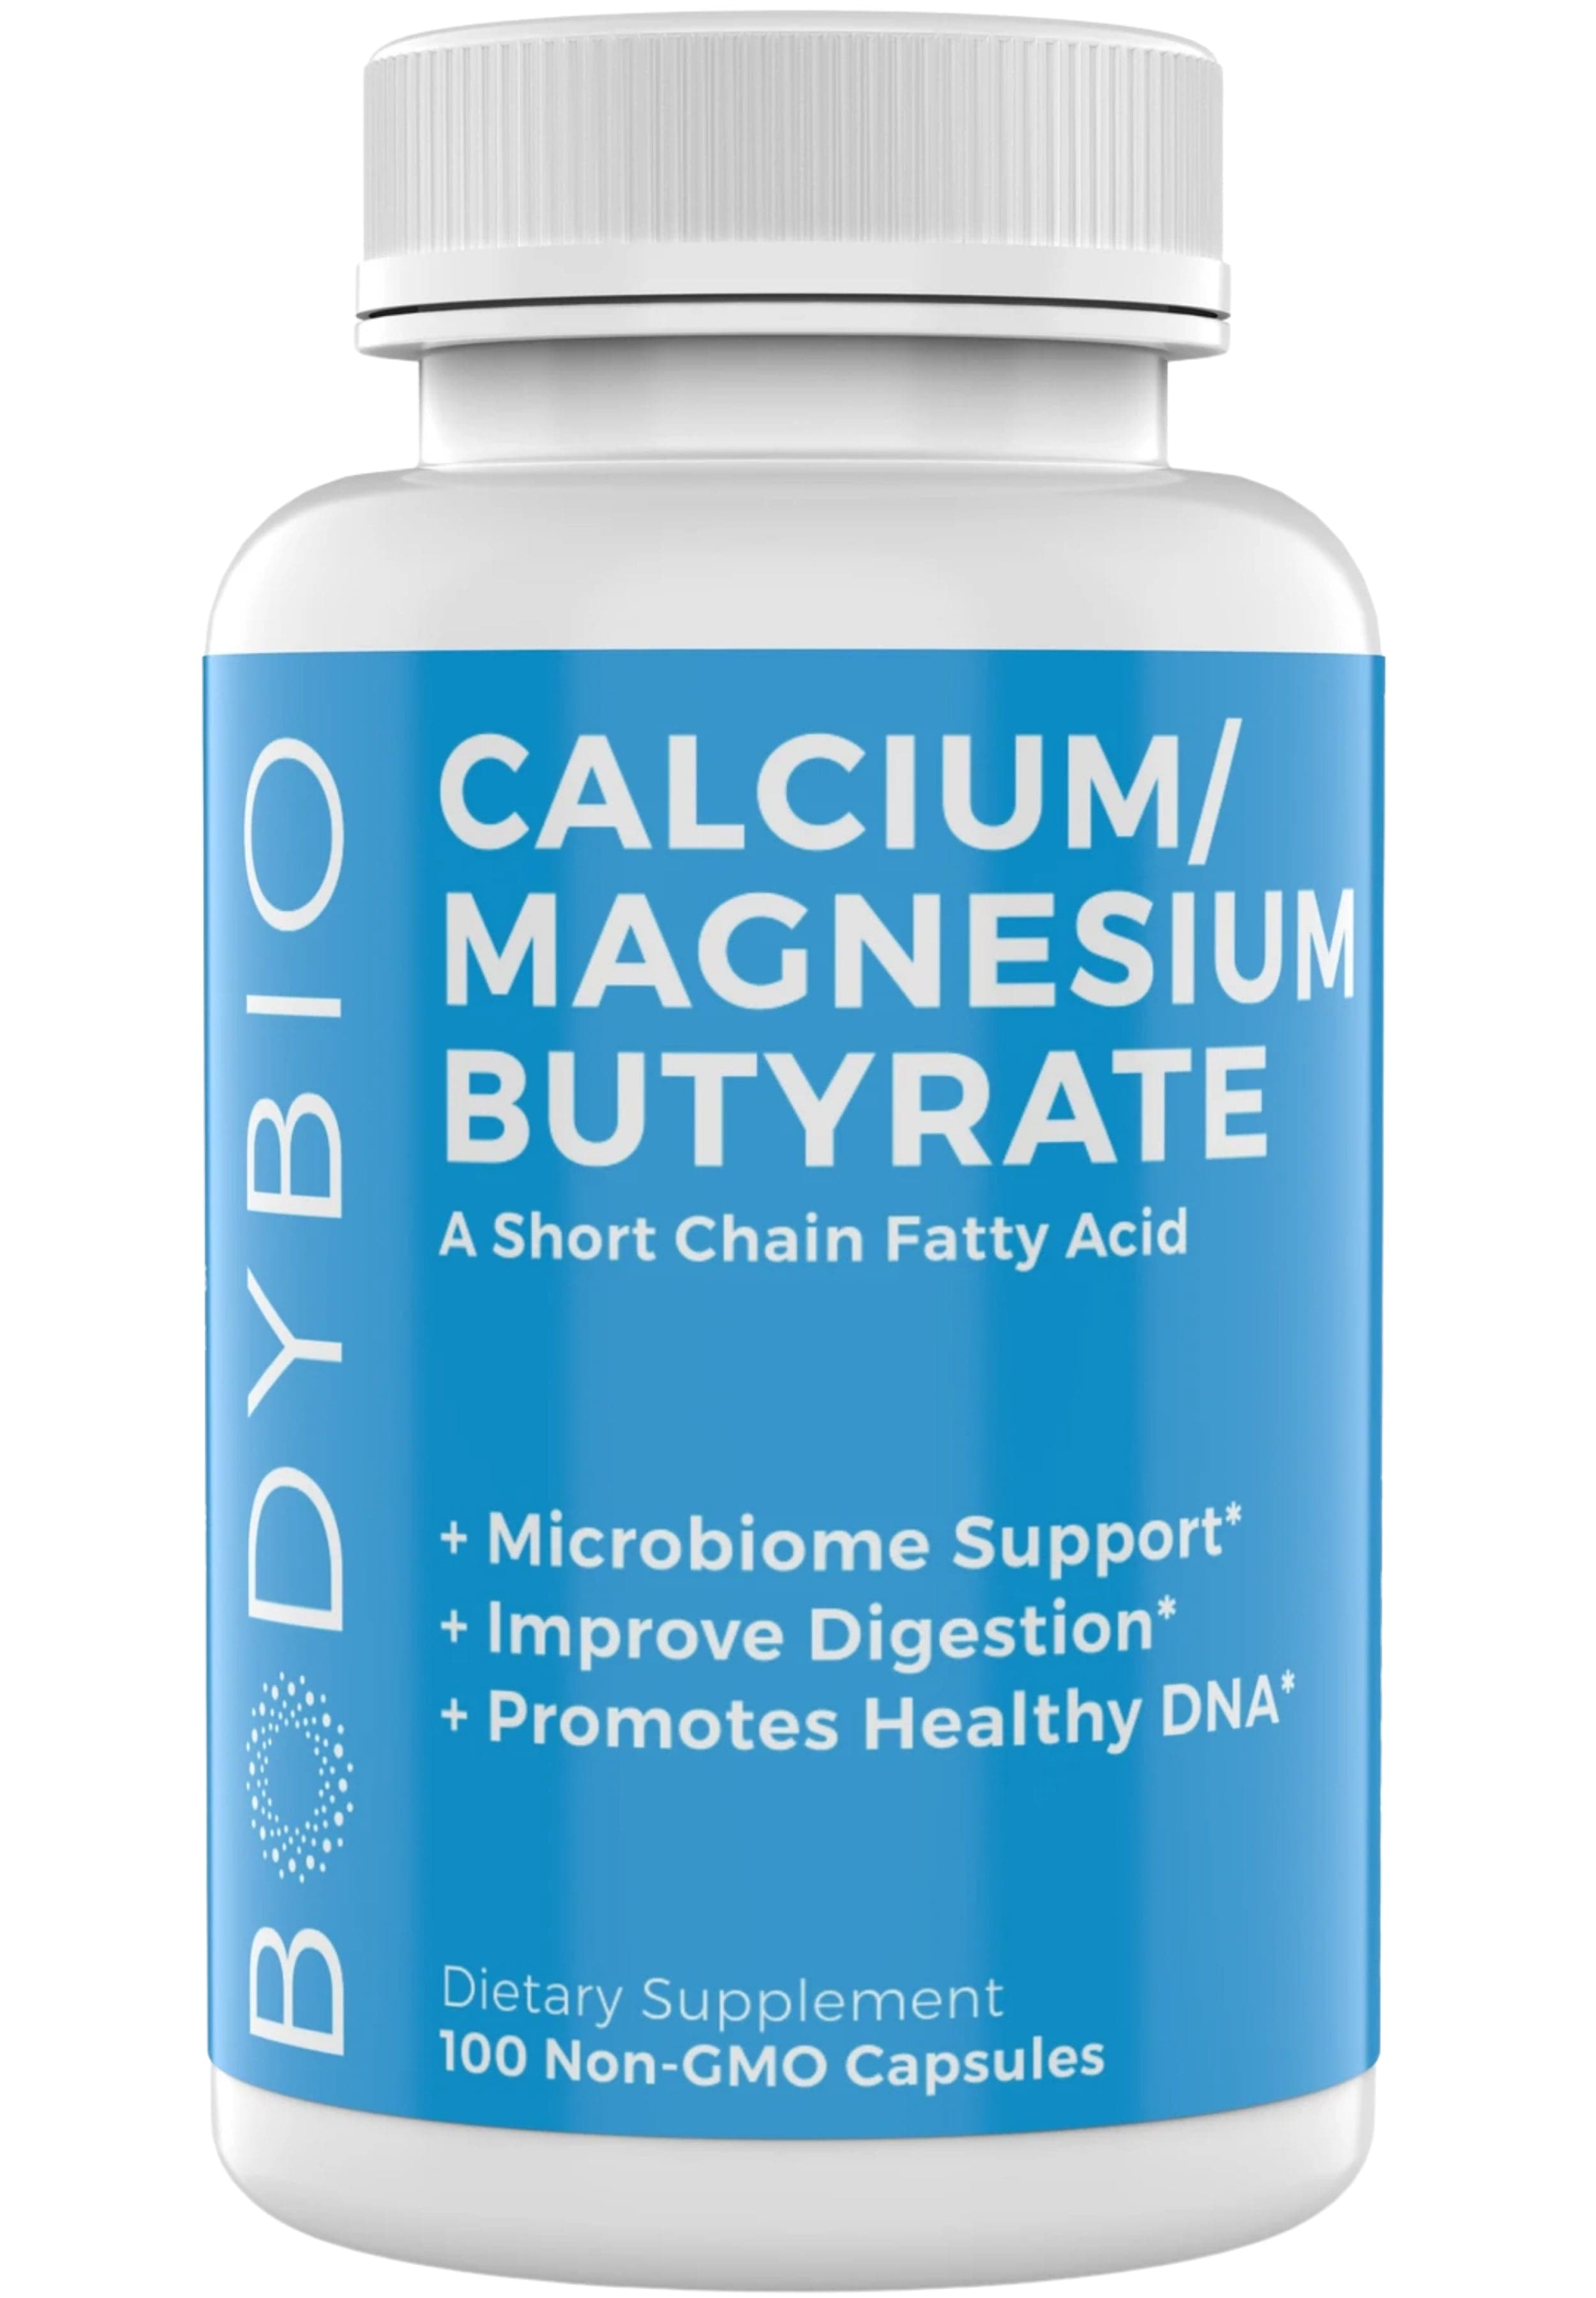 BodyBio Calcium/Magnesium Butyrate